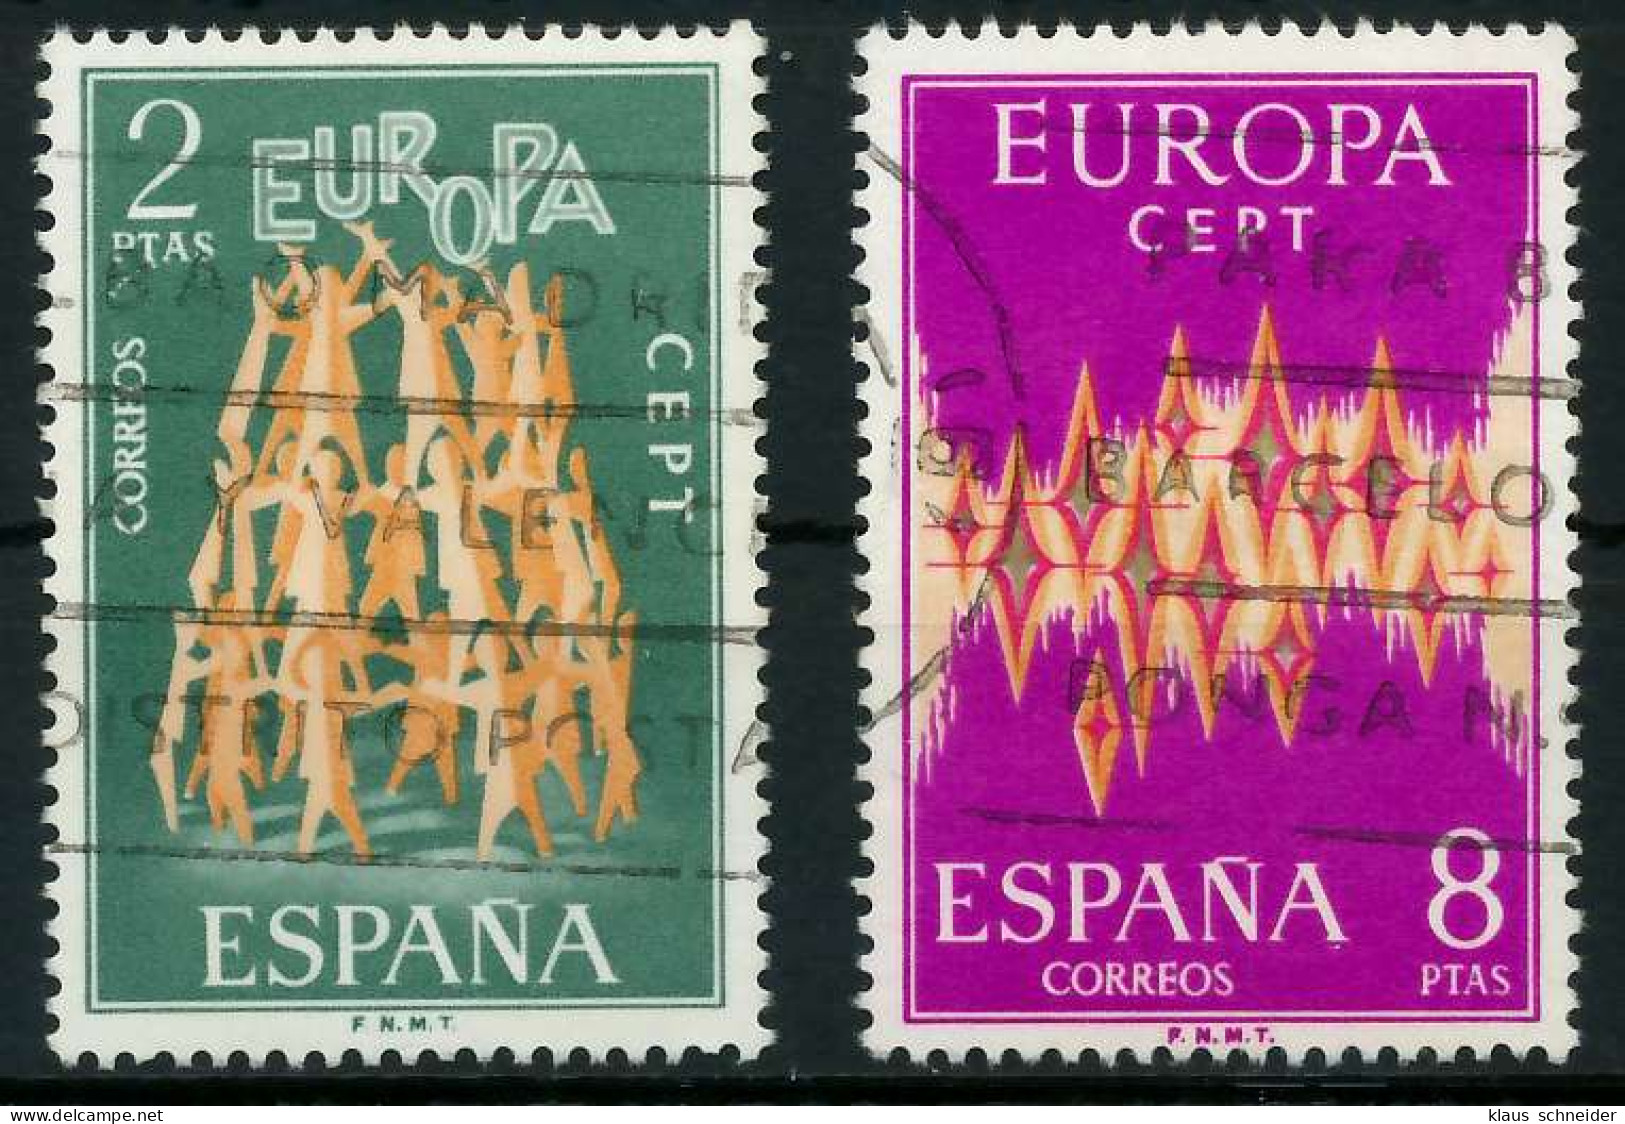 SPANIEN 1972 Nr 1985-1986 Gestempelt X0403BA - Used Stamps